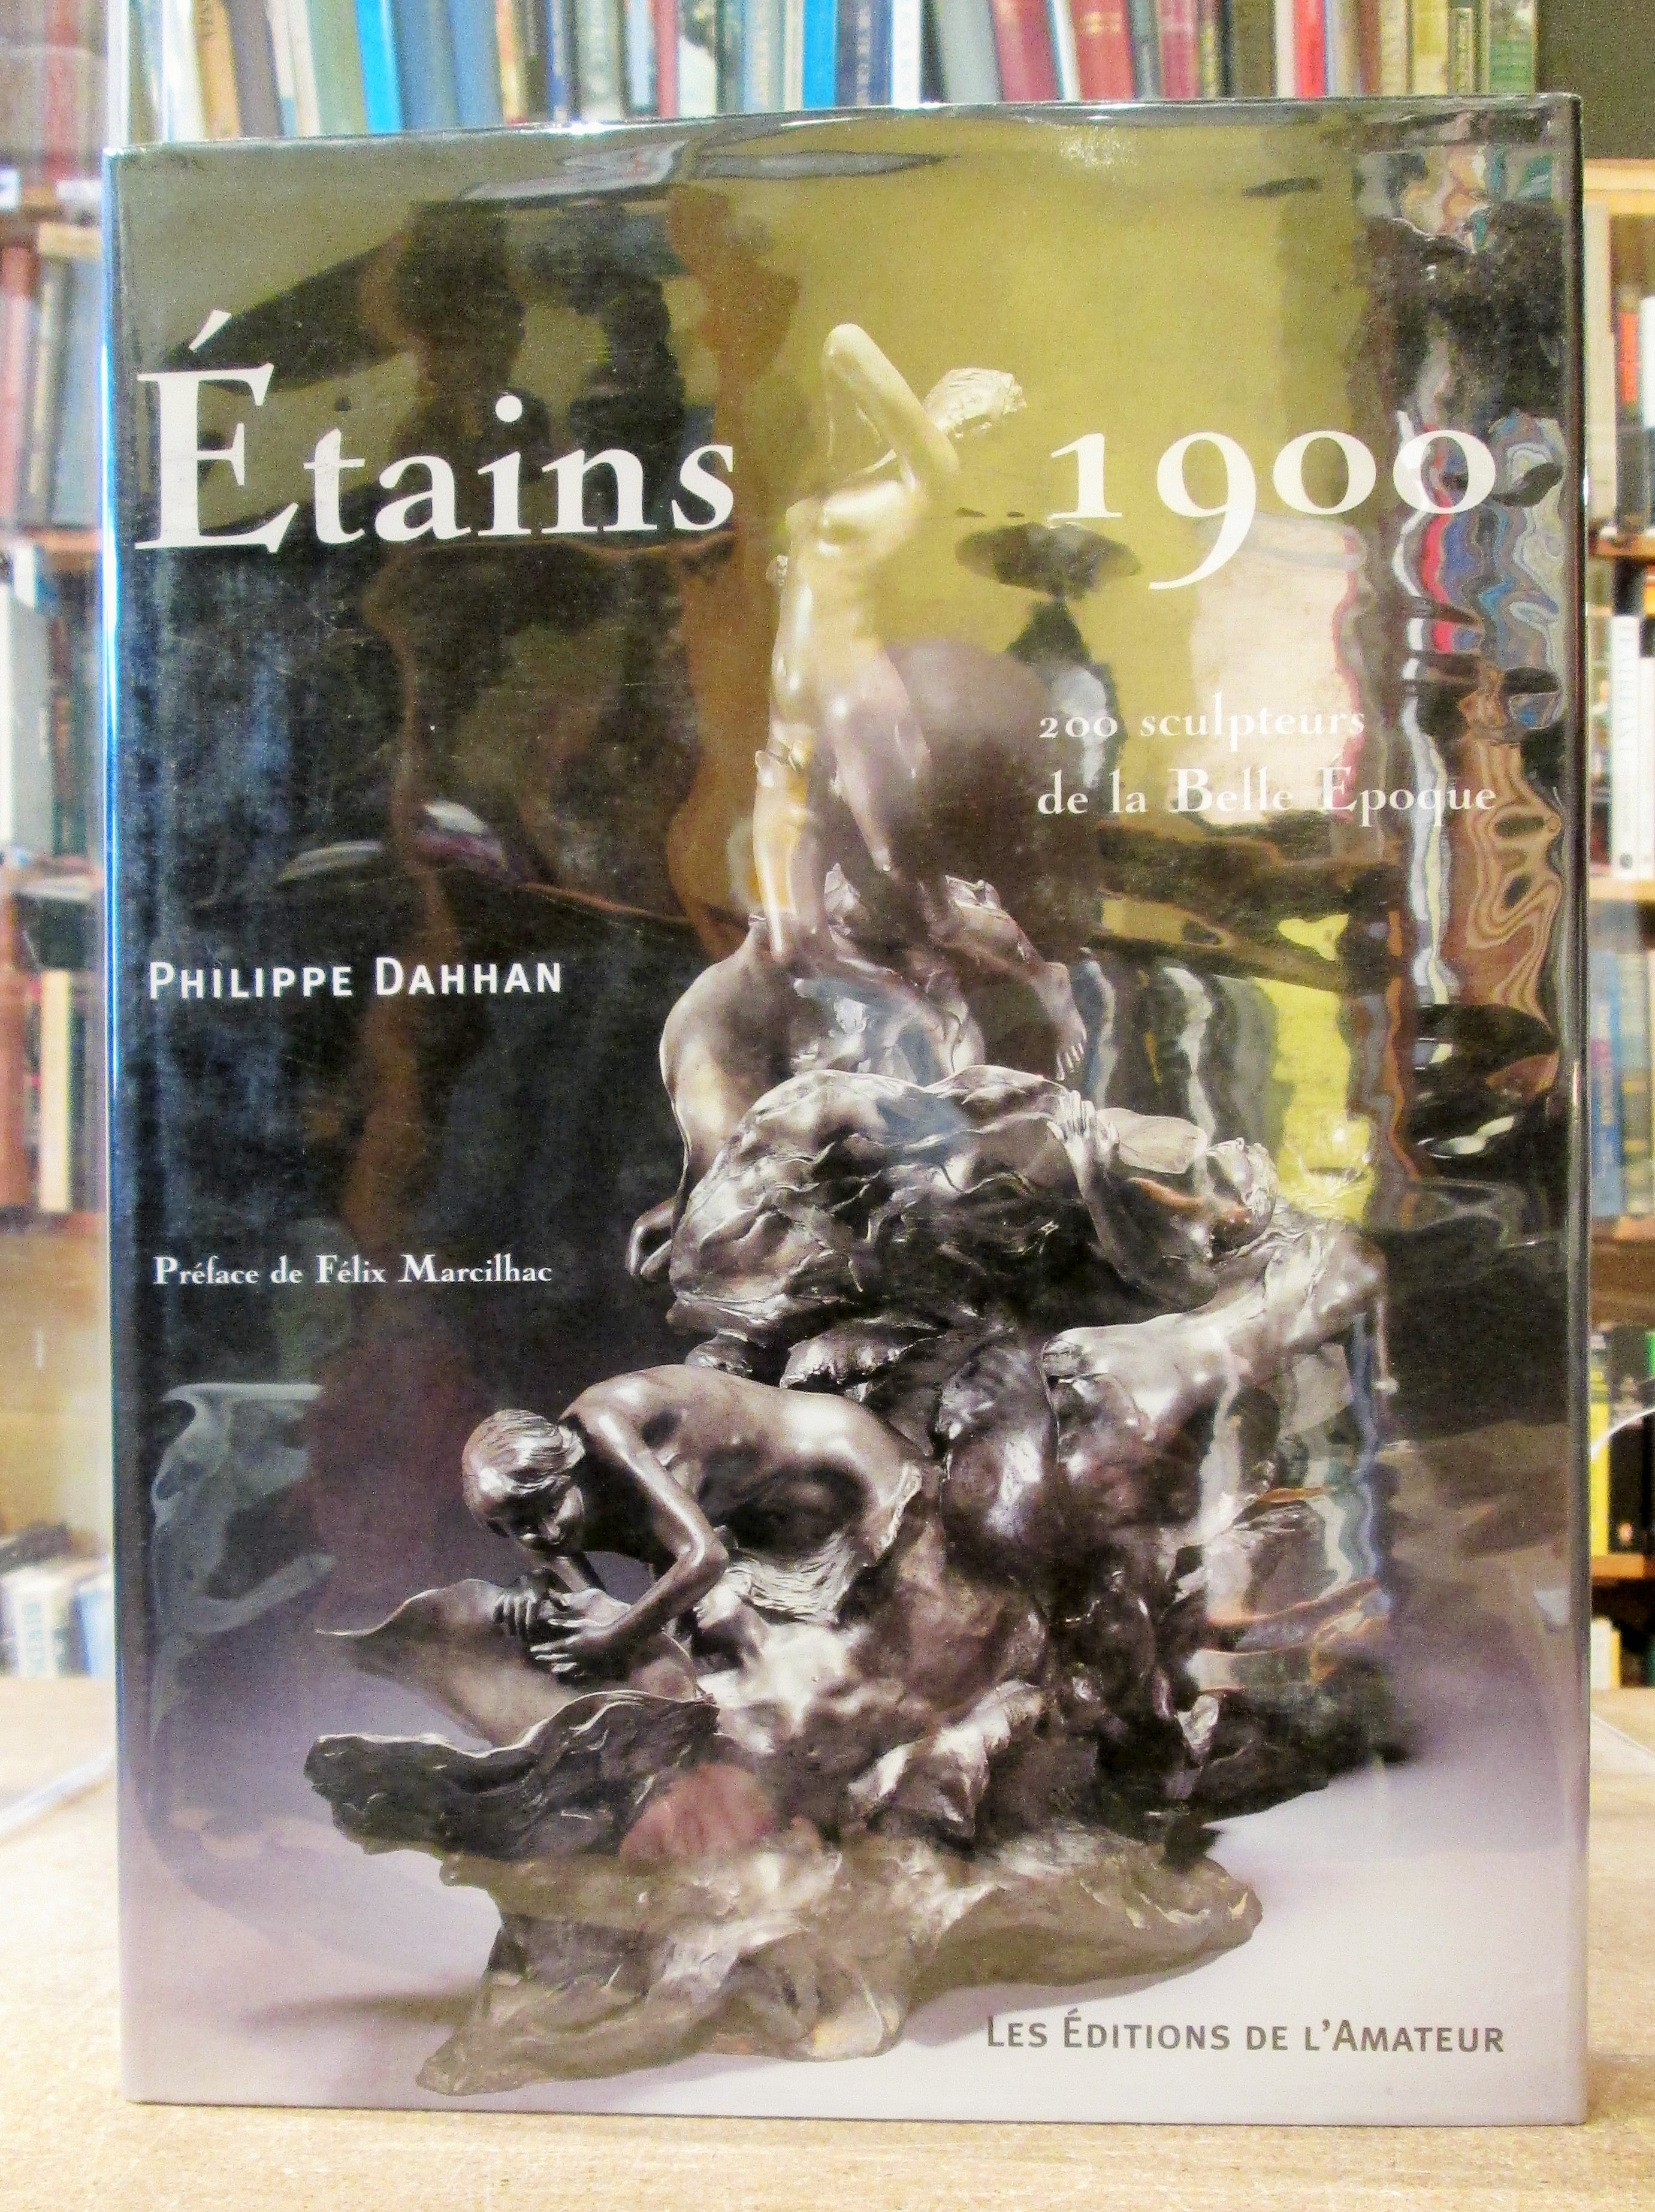 Etains 1900: 200 Sculptures del la Belle Epoque - Dahhan, Philippe